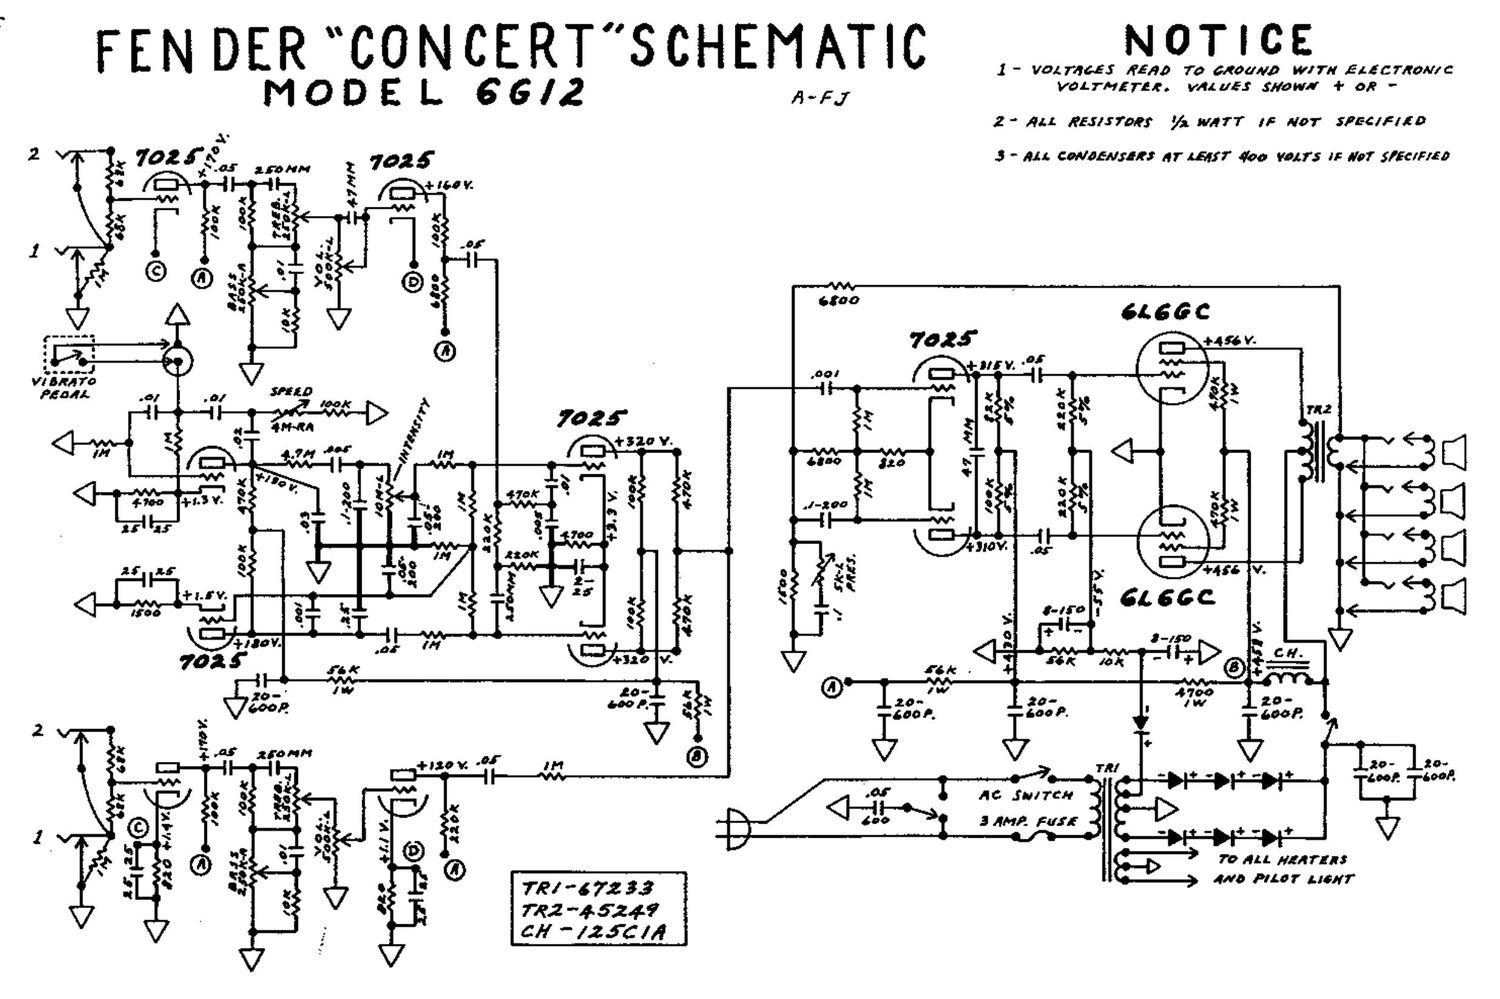 fender concert 6g12 schematic